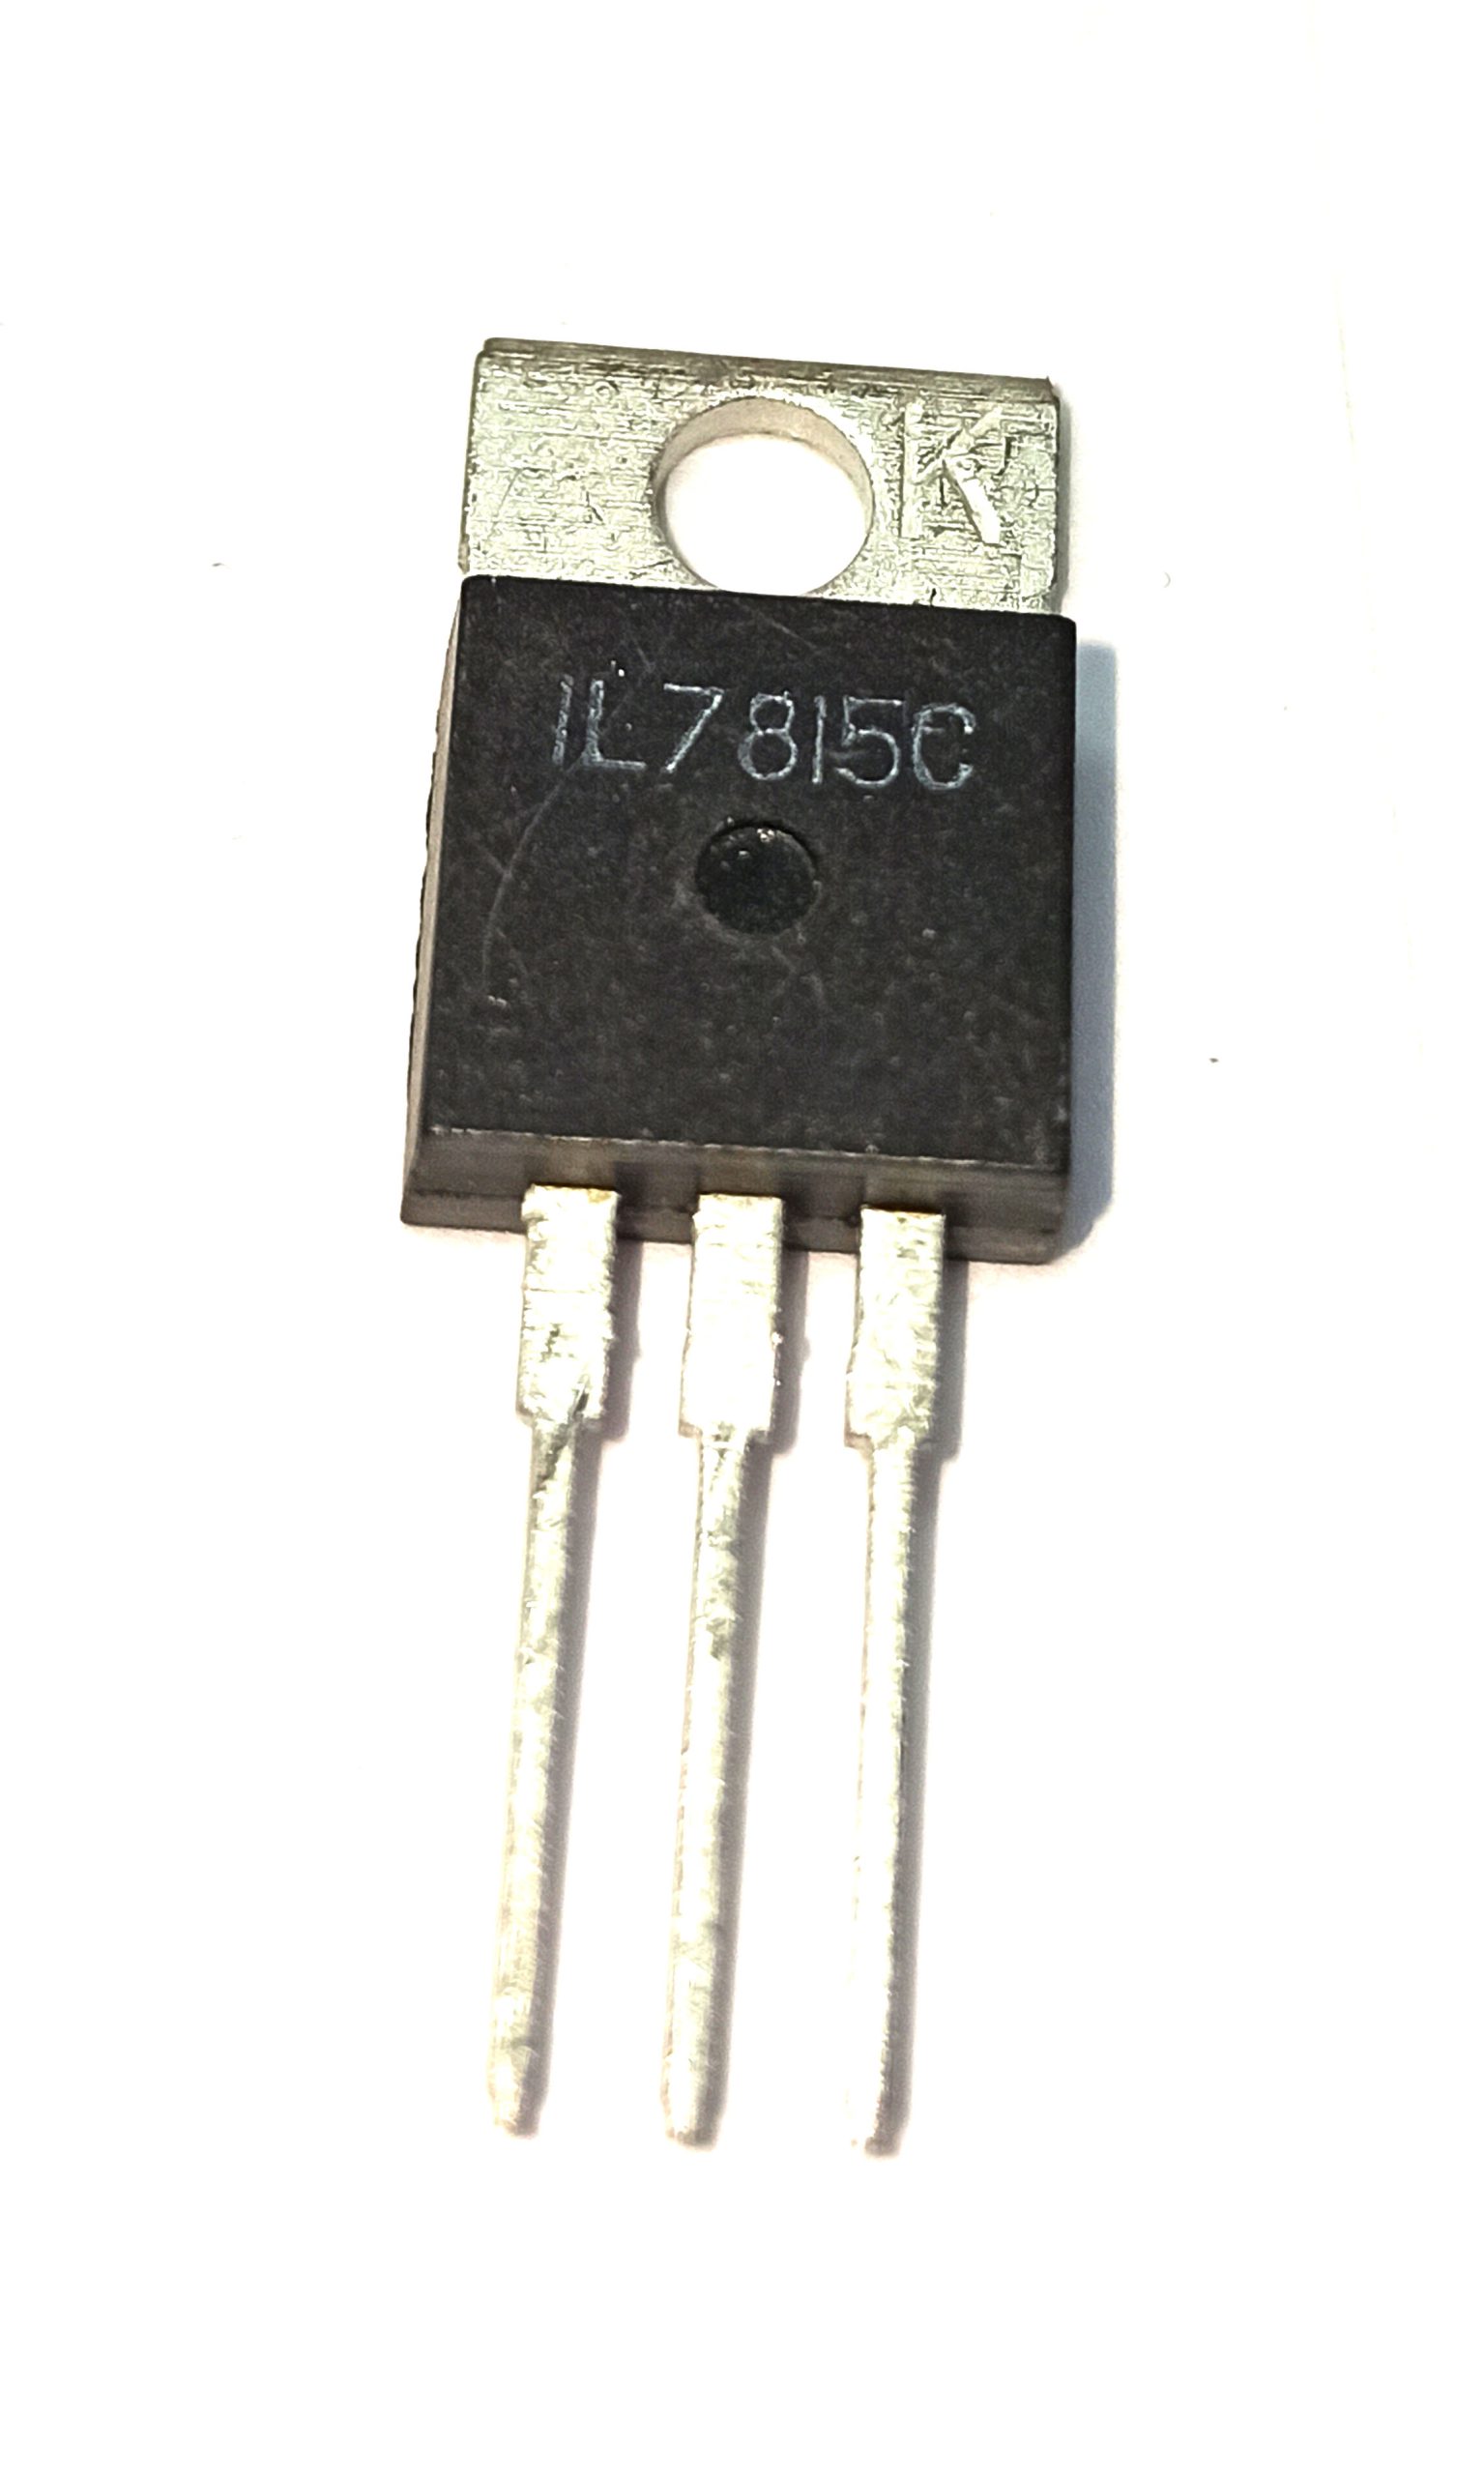 آی سی مدل IL7815C